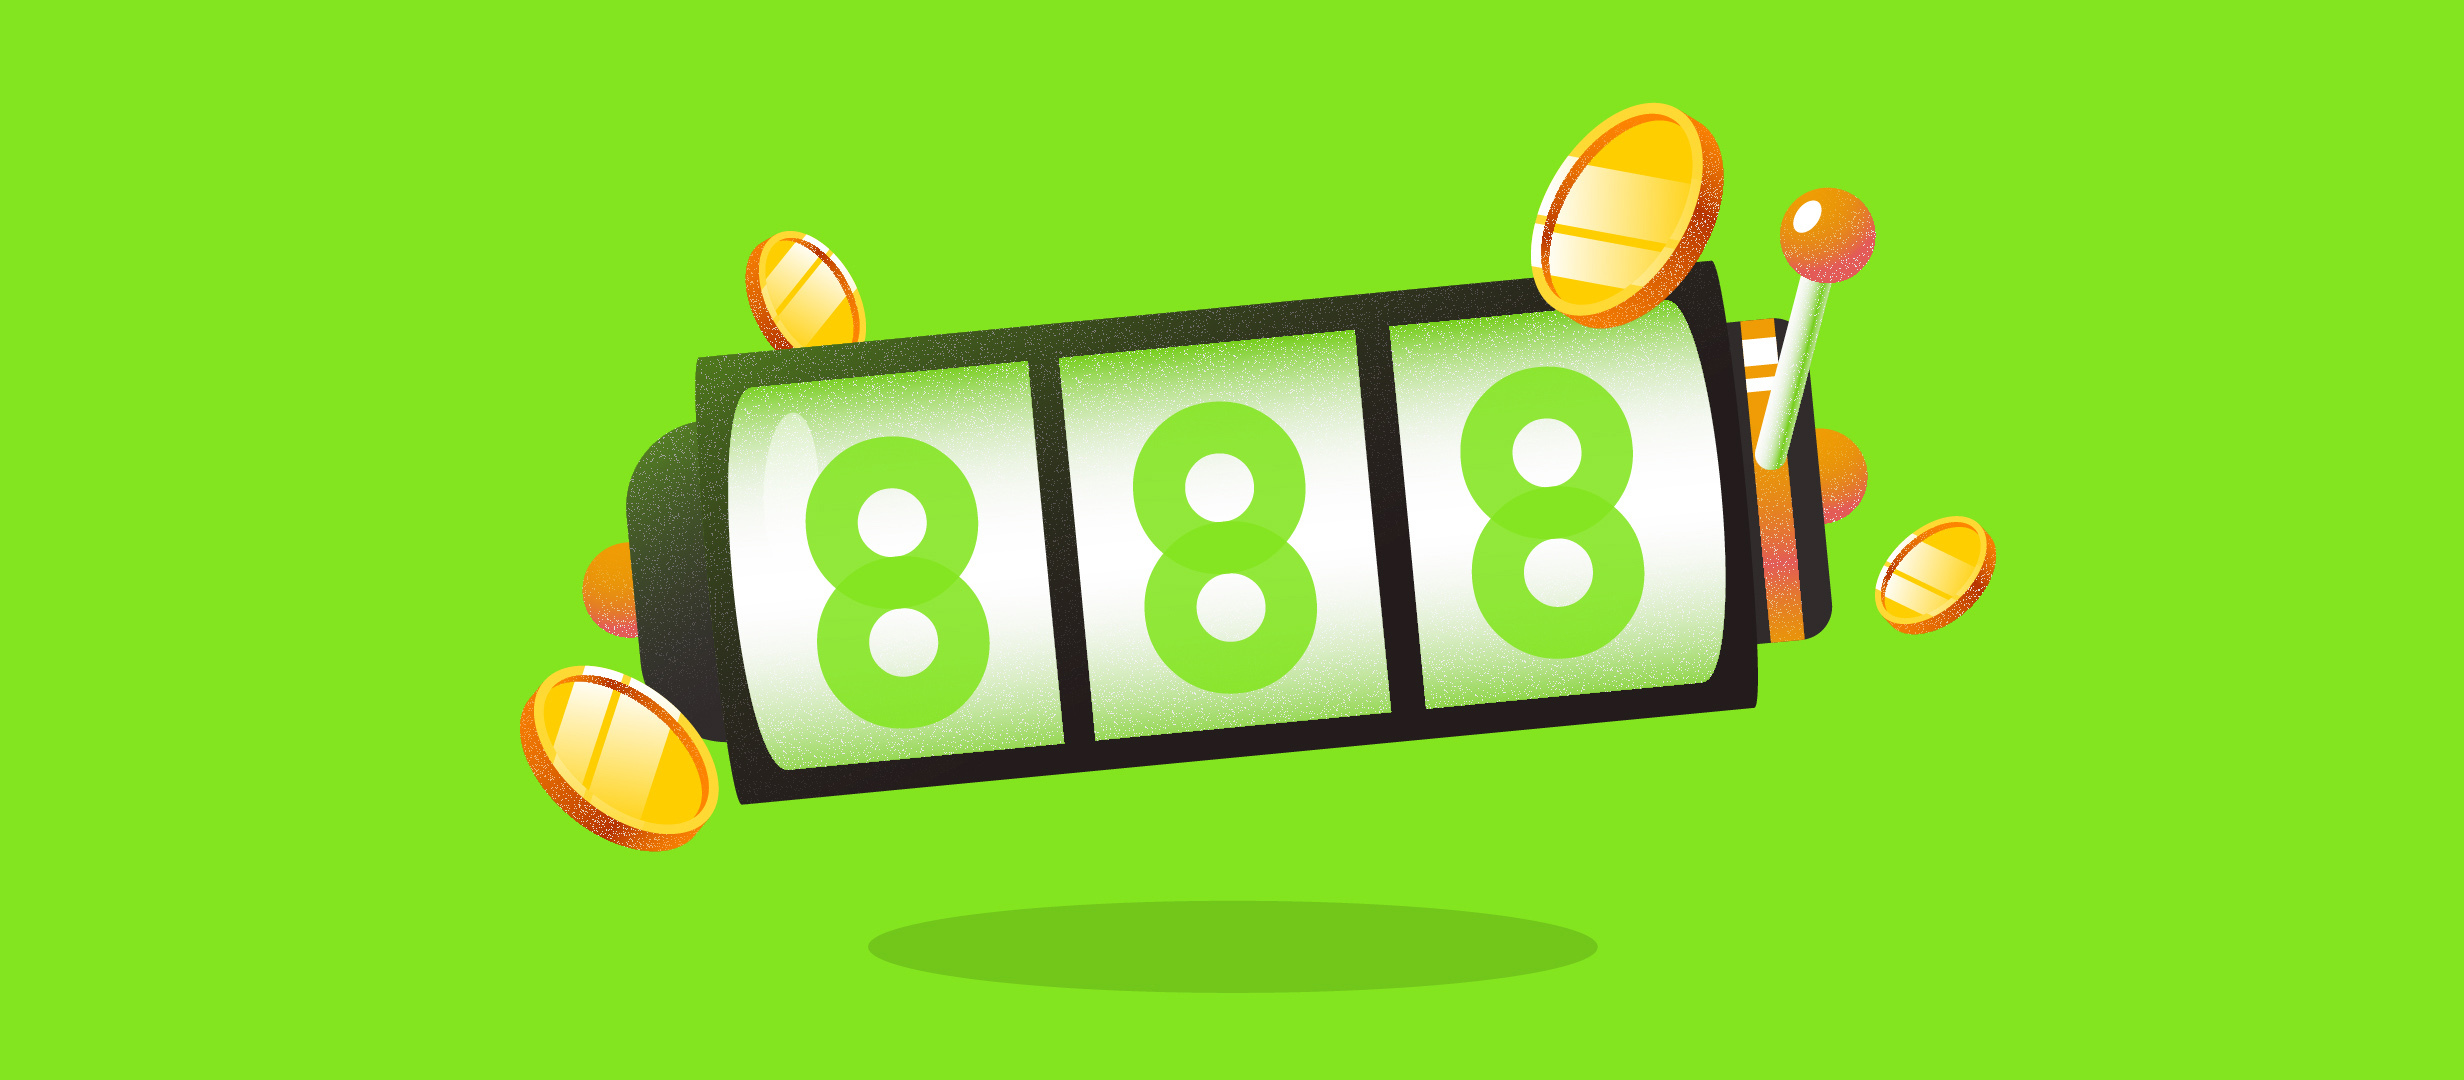 888 Casino - Toate jocurile cu si despre sport